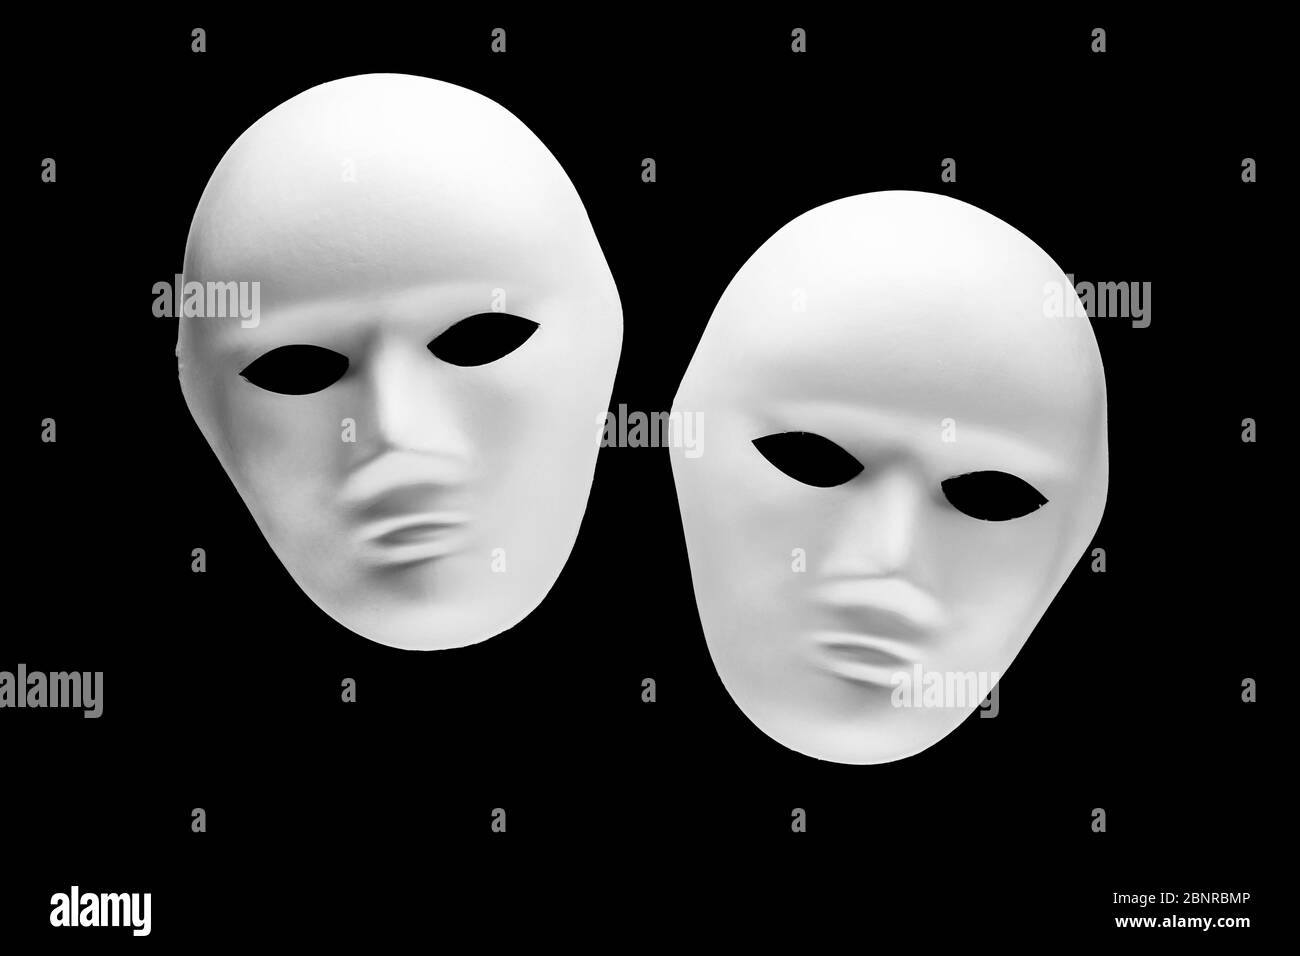 Zwei menschliche Gesichtsmasken isoliert auf schwarzem Hintergrund. Konzept der psychologischen Identität oder Persönlichkeitsstörung Stockfoto